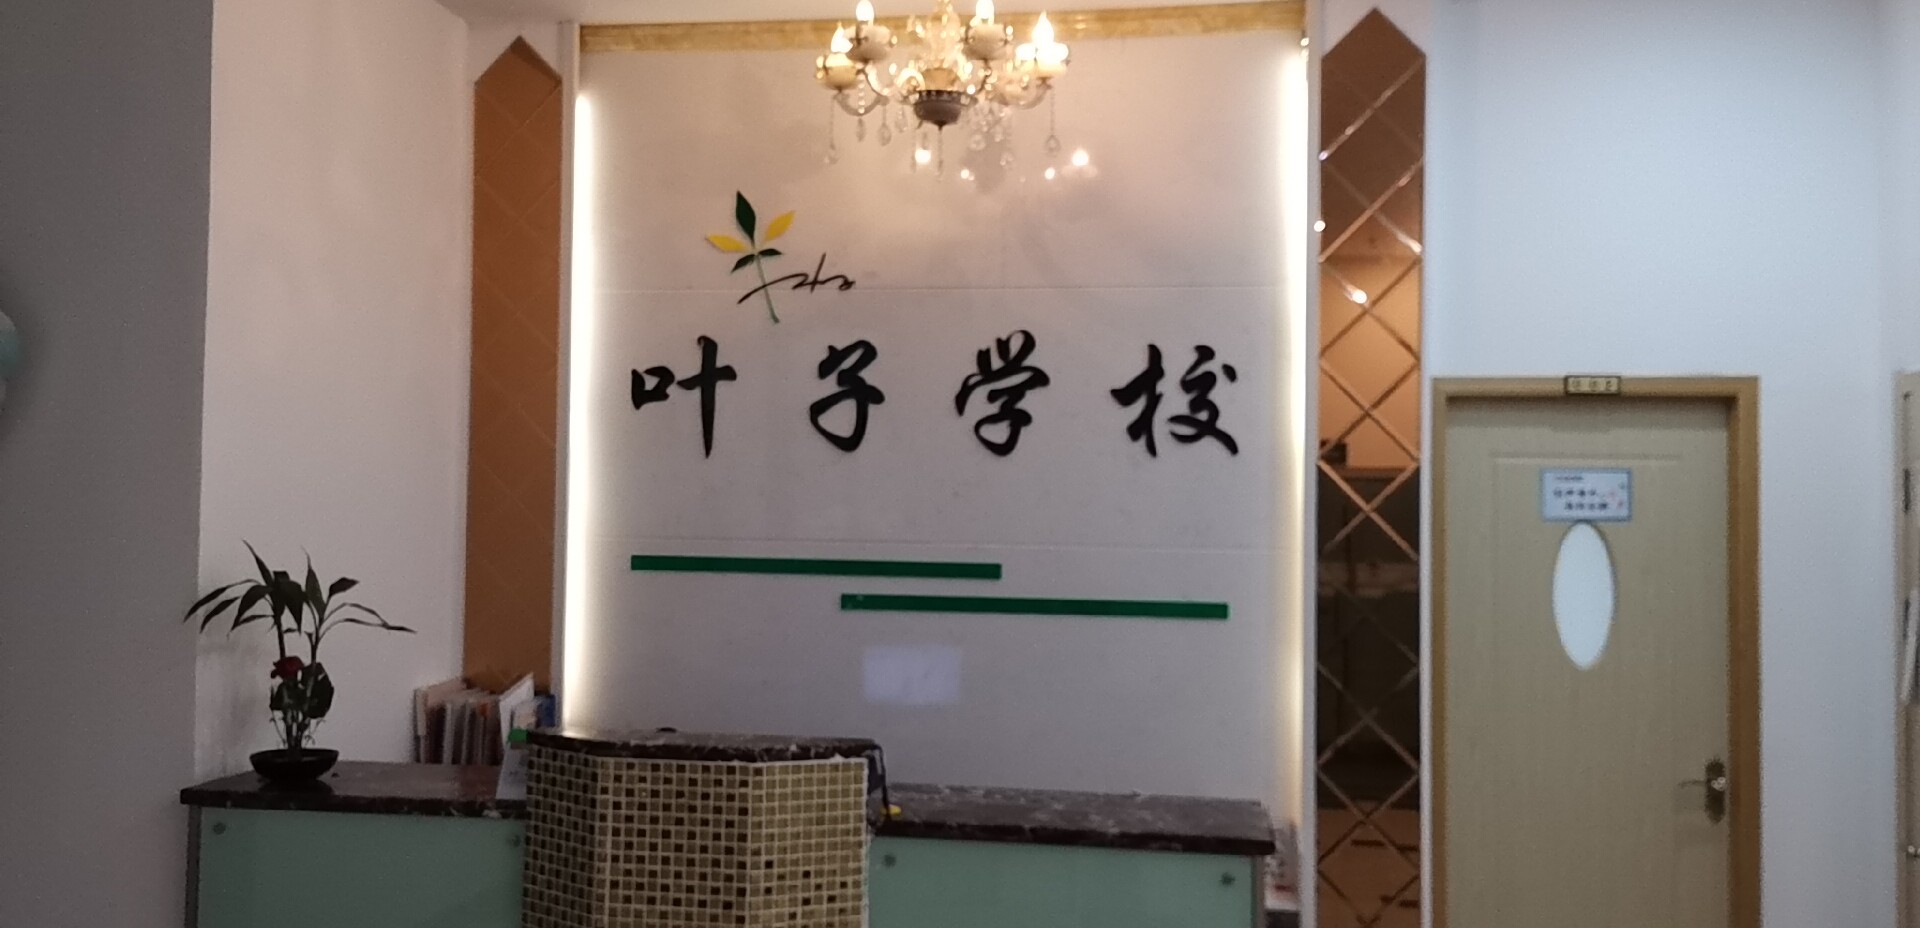 寧波市葉子美容美甲茶藝化妝培訓學校(江東店)